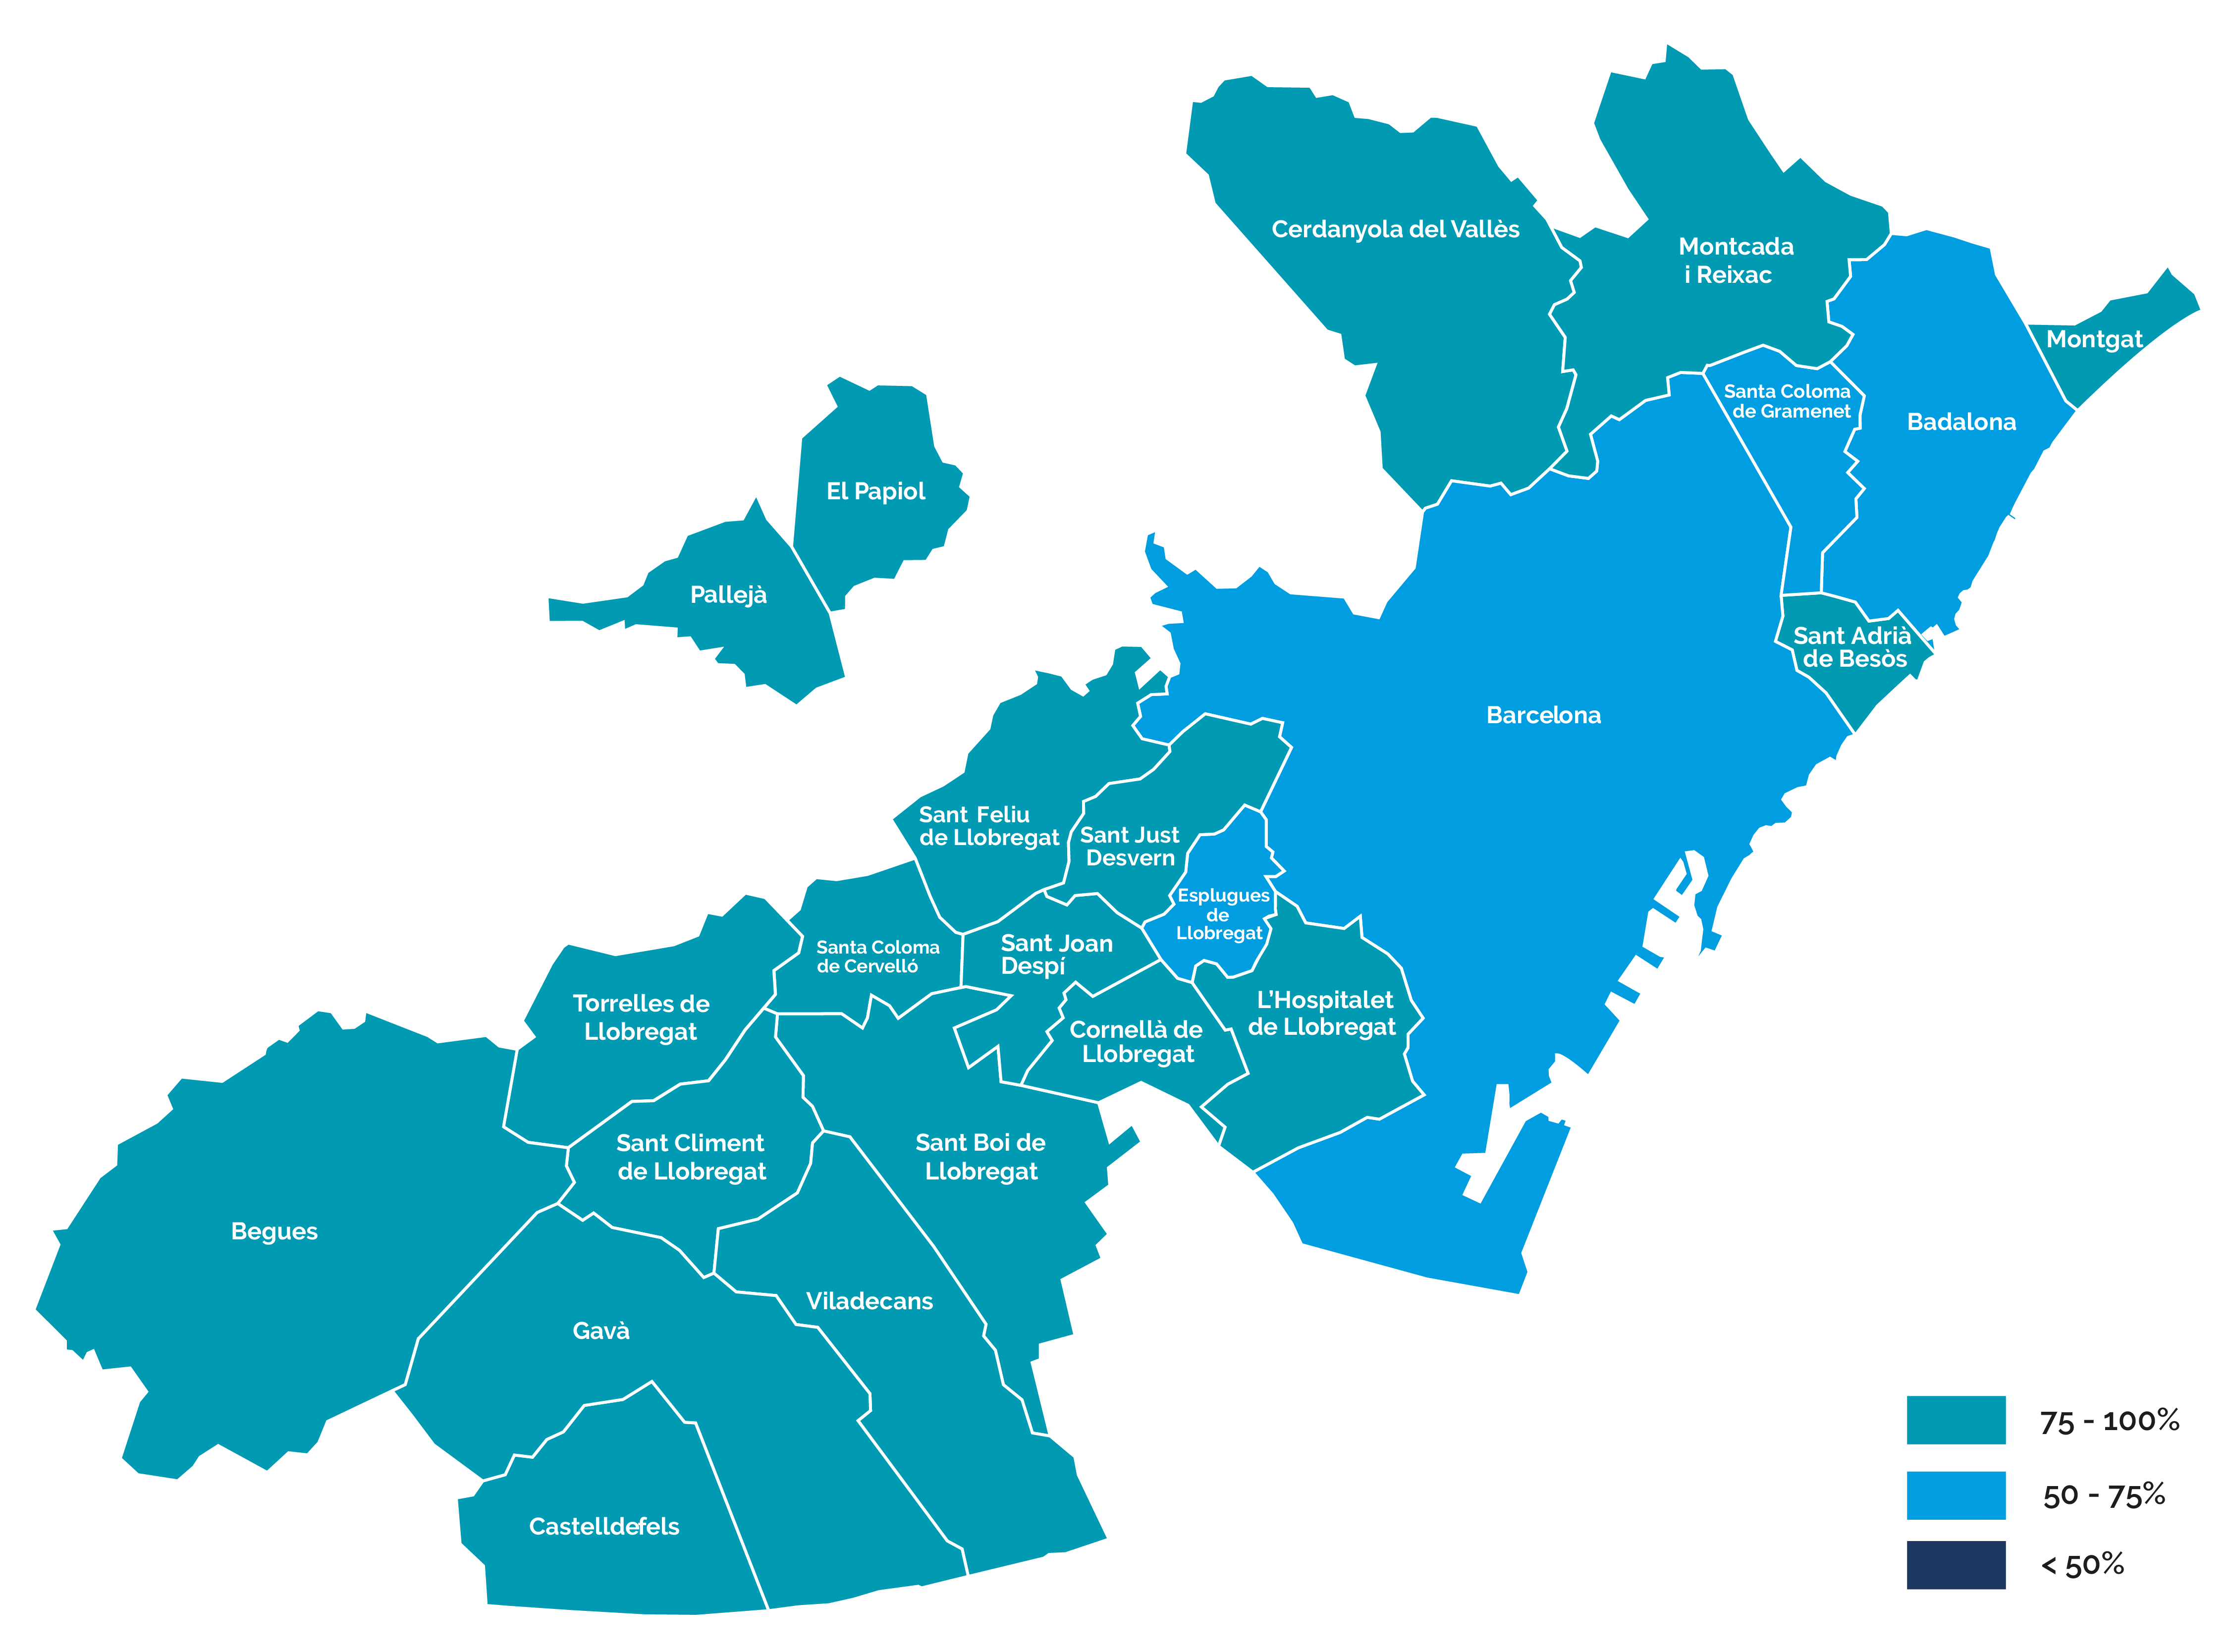 Mapa del nivel de despliegue de telelectura por municipios